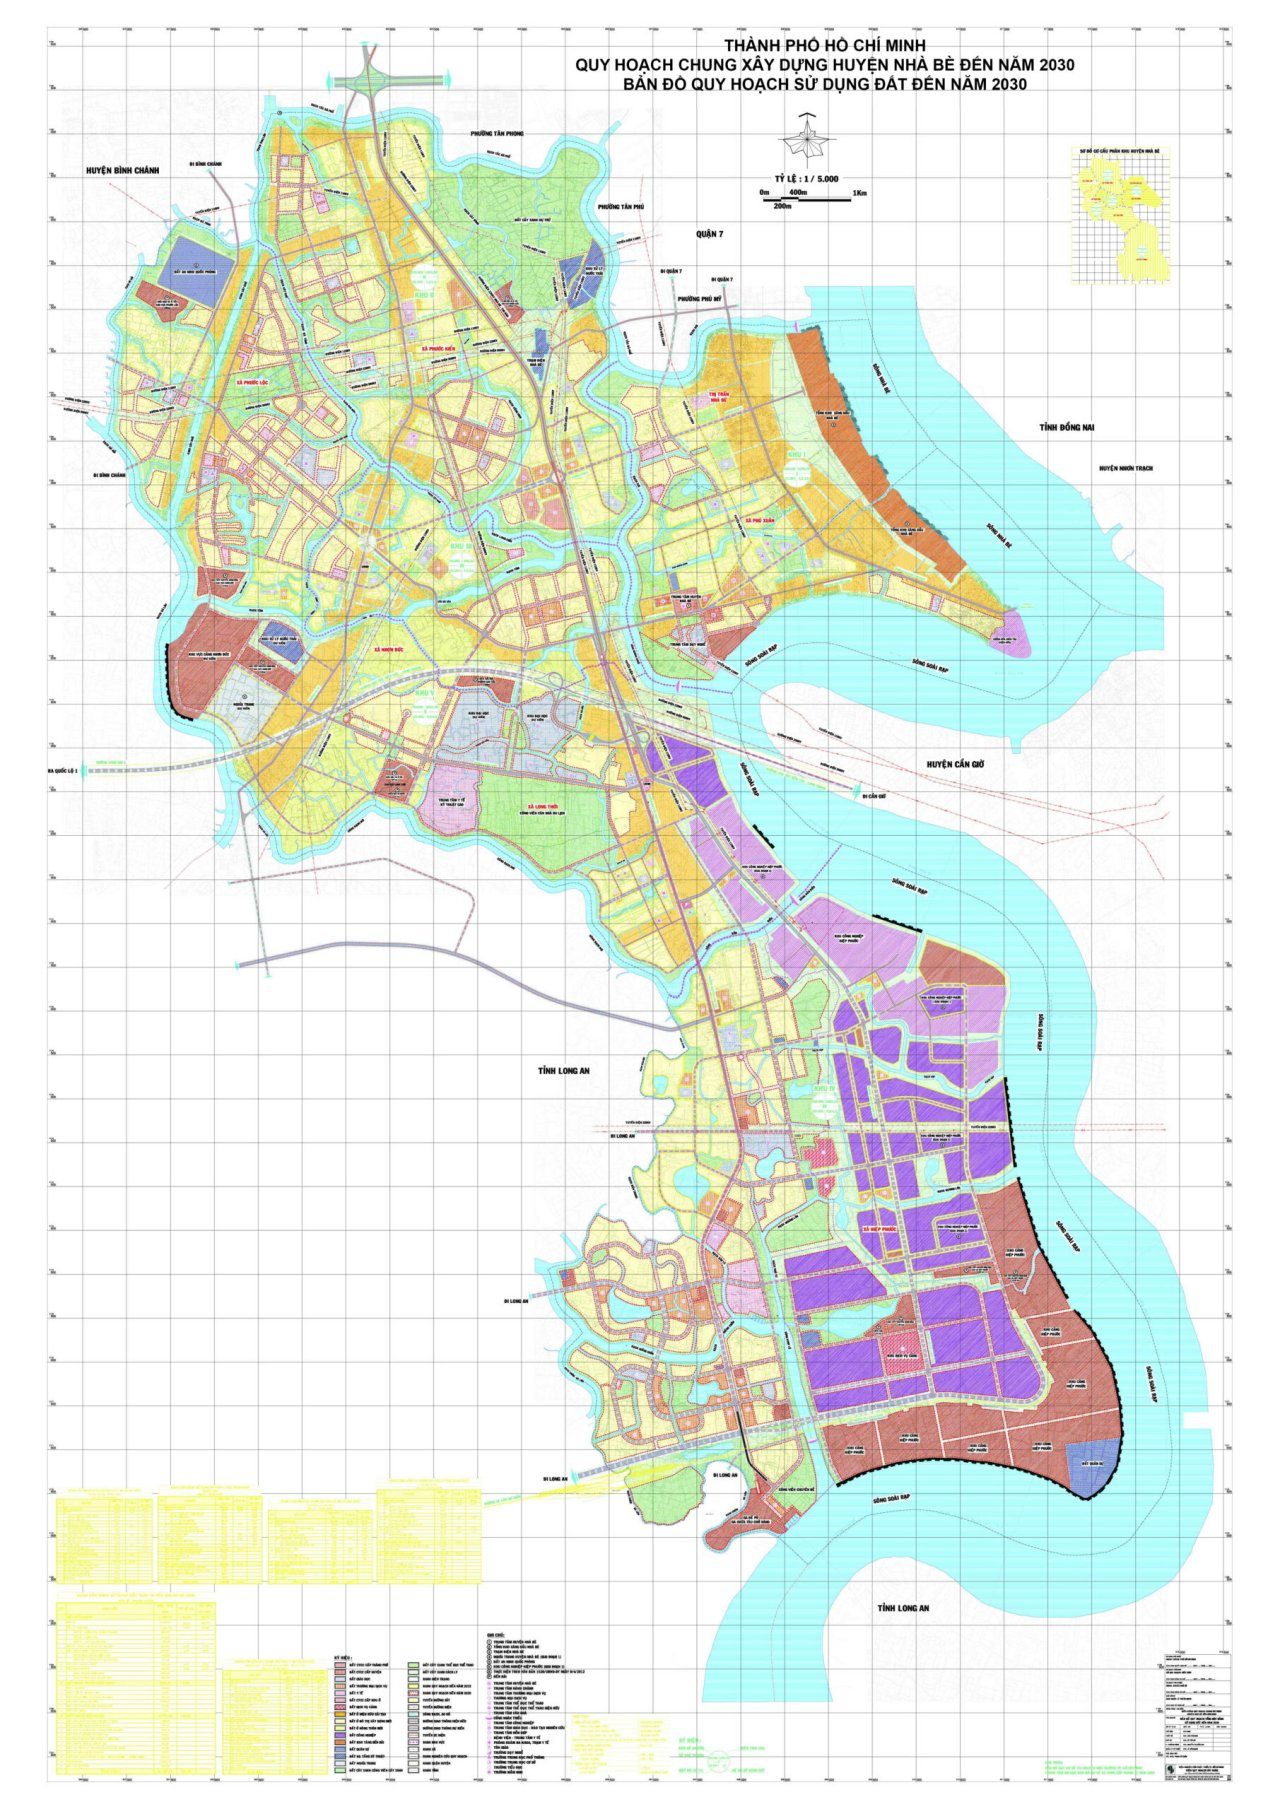 Bản đồ quy hoạch sử dụng đất của huyện Nhà Bè đến năm 2030